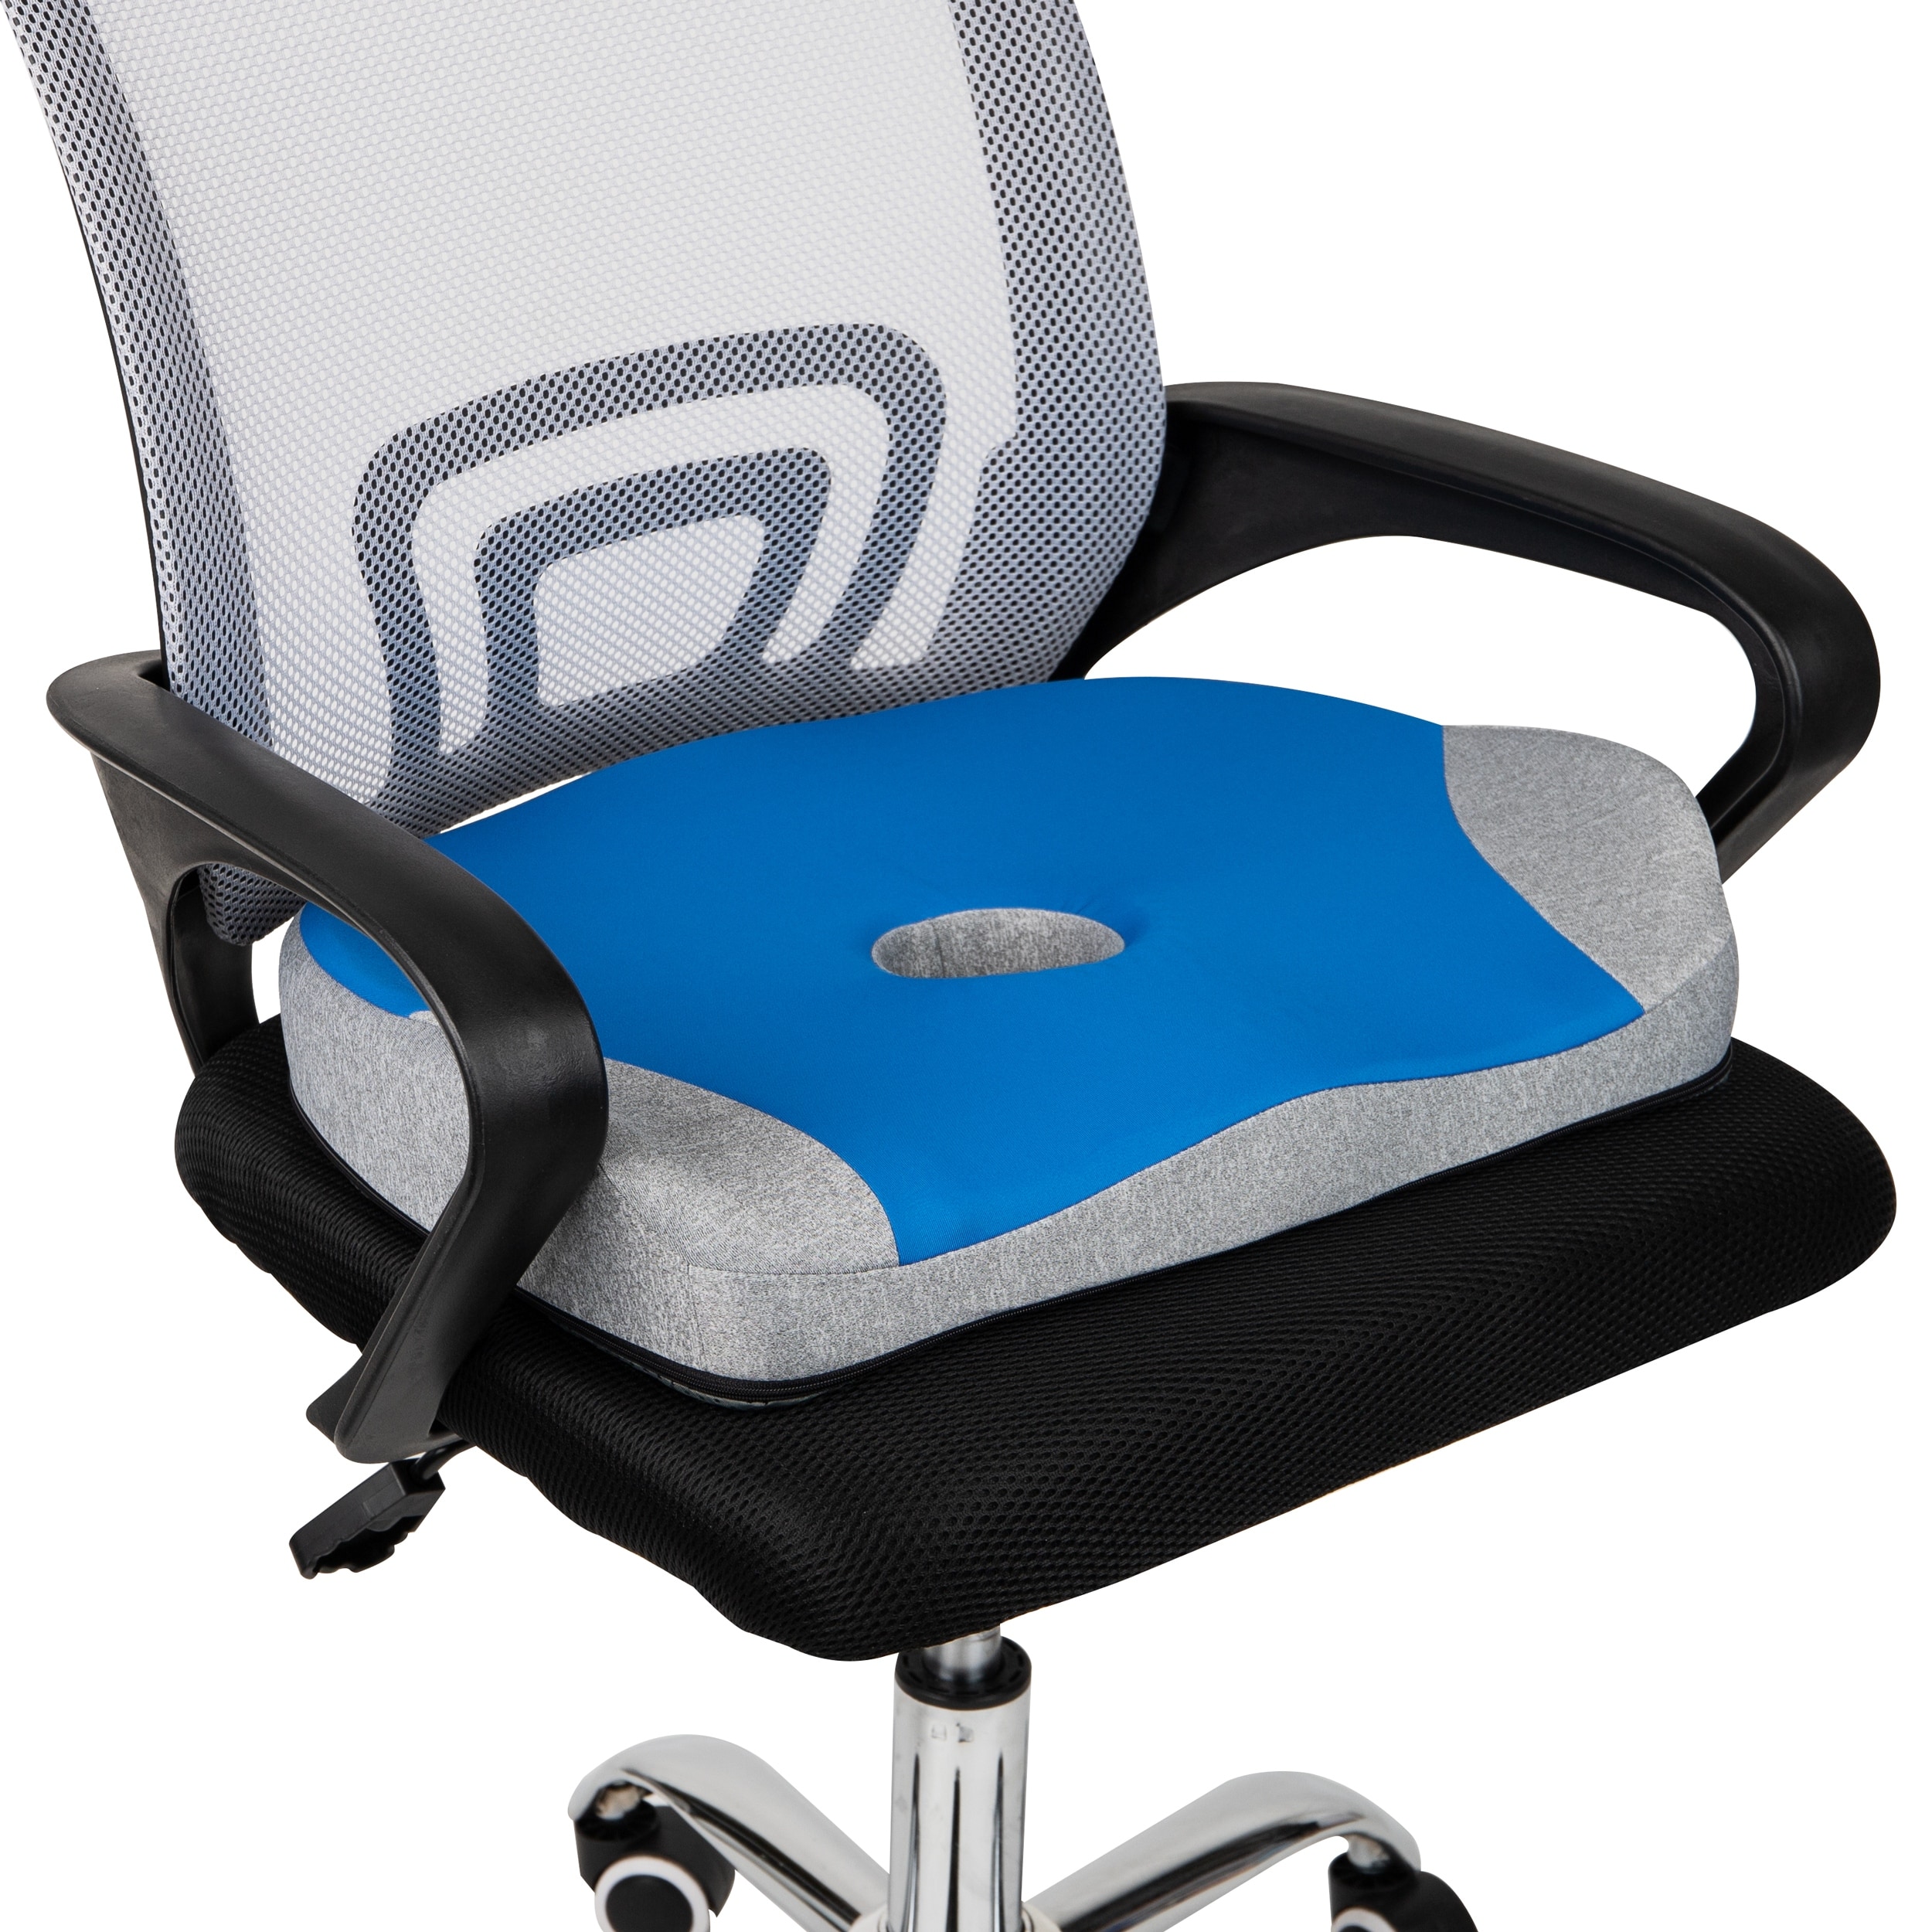 Ergonomic Pressure Relief Seat Cushion